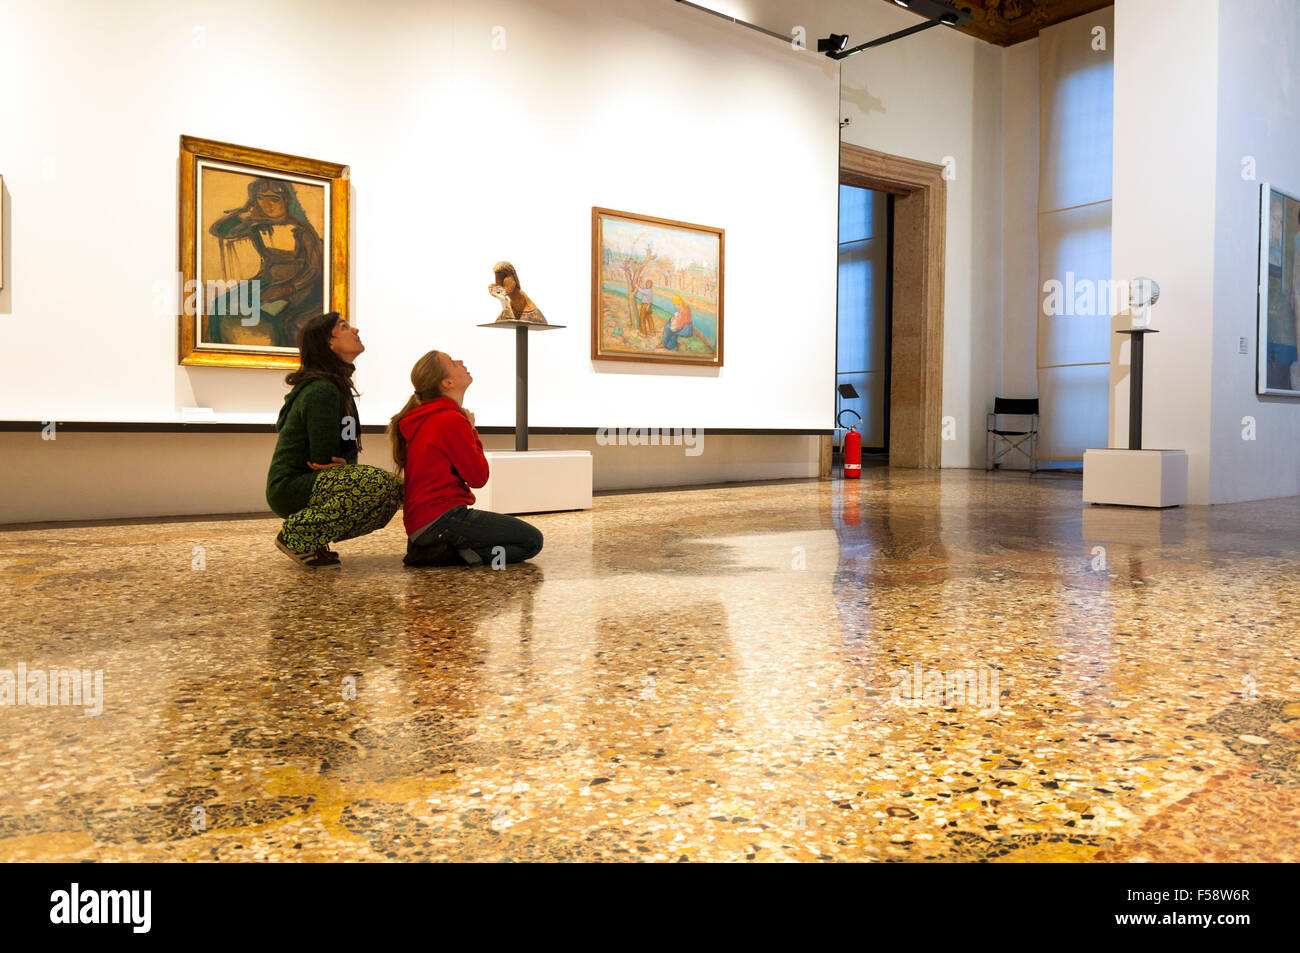 Ca' Pesaro - Galleria Internazionale d'Arte Moderna, Venezia, Italia. Due le donne guardano a mostre. Foto Stock